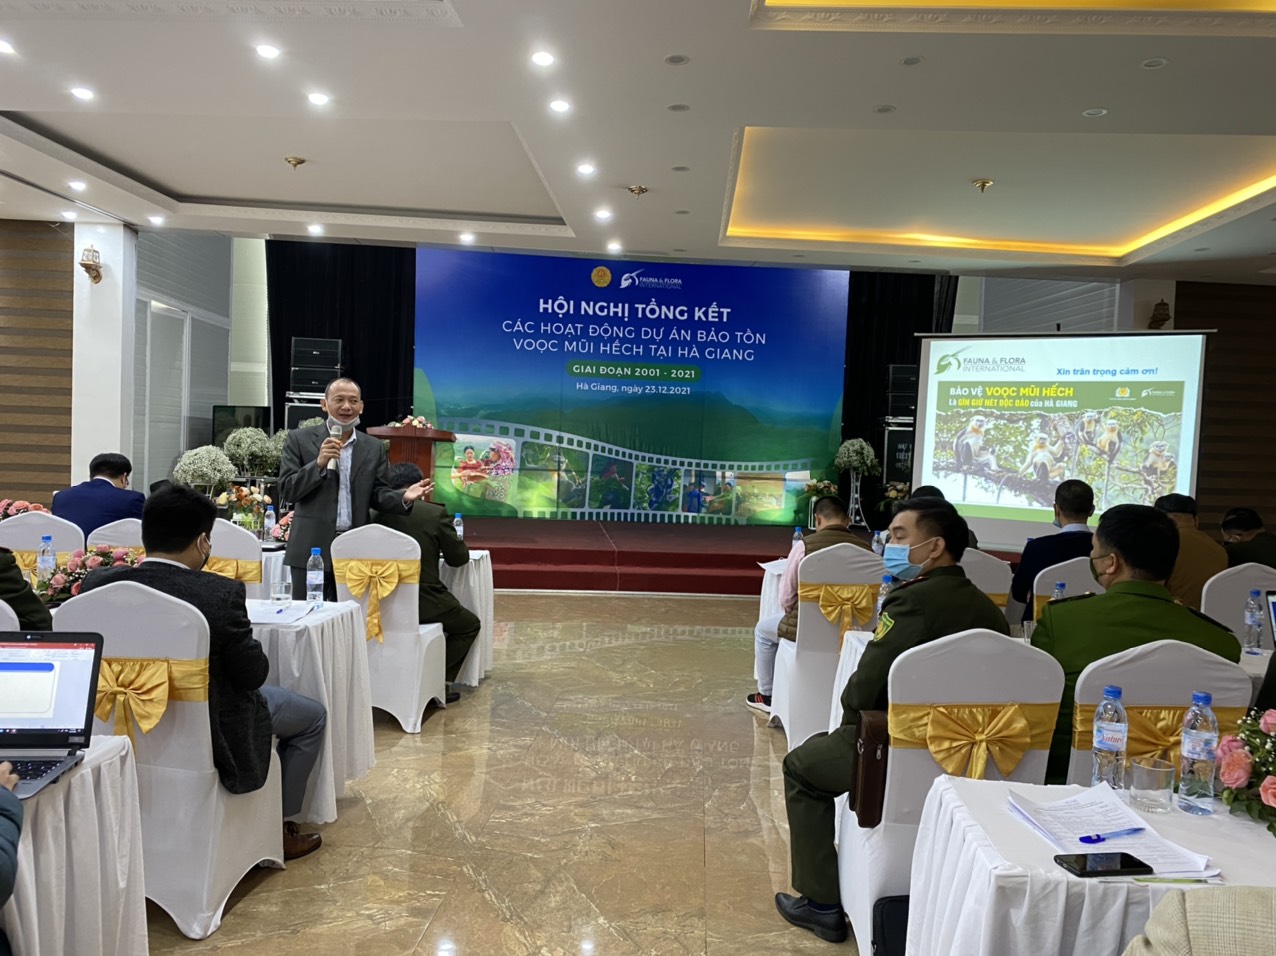 Hội  nghị Tổng kết các hoạt động Dự án bảo tồn tồn Voọc mũi hếch tại Hà Giang giai đoạn 2001 - 2021